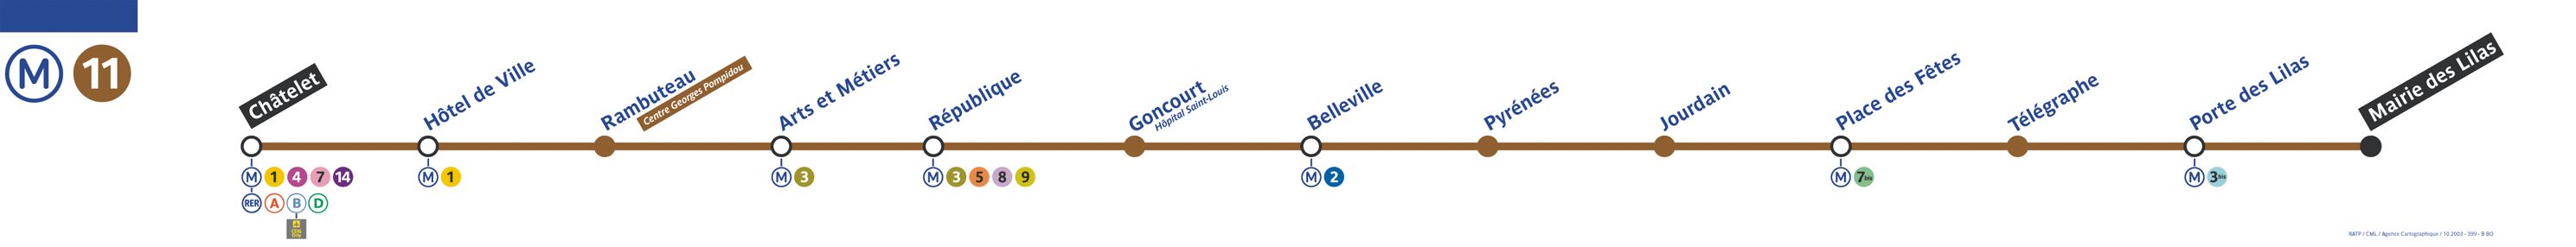 Plan ligne 11 métro de Paris